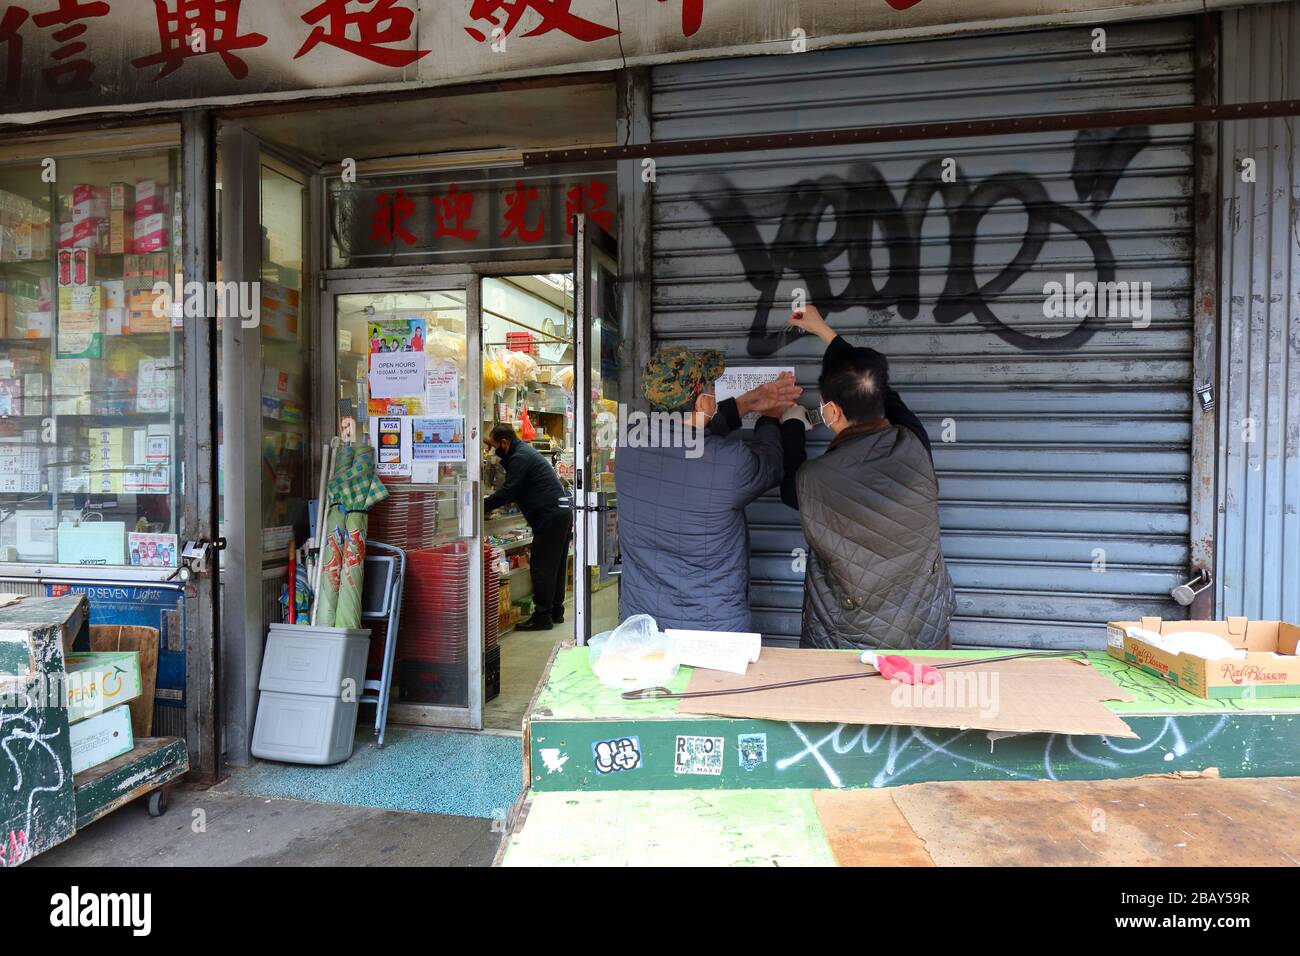 Nueva York, NY, 29 de marzo de 2020. Tan Tin Hung, un supermercado asiático en Manhattan Chinatown, publica un cartel indicando que la tienda estará cerrada hasta nuevo aviso debido a la pandemia de coronavirus COVID 19. Las tiendas de comestibles étnicas en toda la Ciudad han comenzado a cerrar temporalmente debido a problemas de la cadena de suministro, incluyendo proveedores que deteniendo los envíos a la Ciudad, y el cierre como una precaución para proteger a los trabajadores. Crédito: Robert K. Chin. Foto de stock